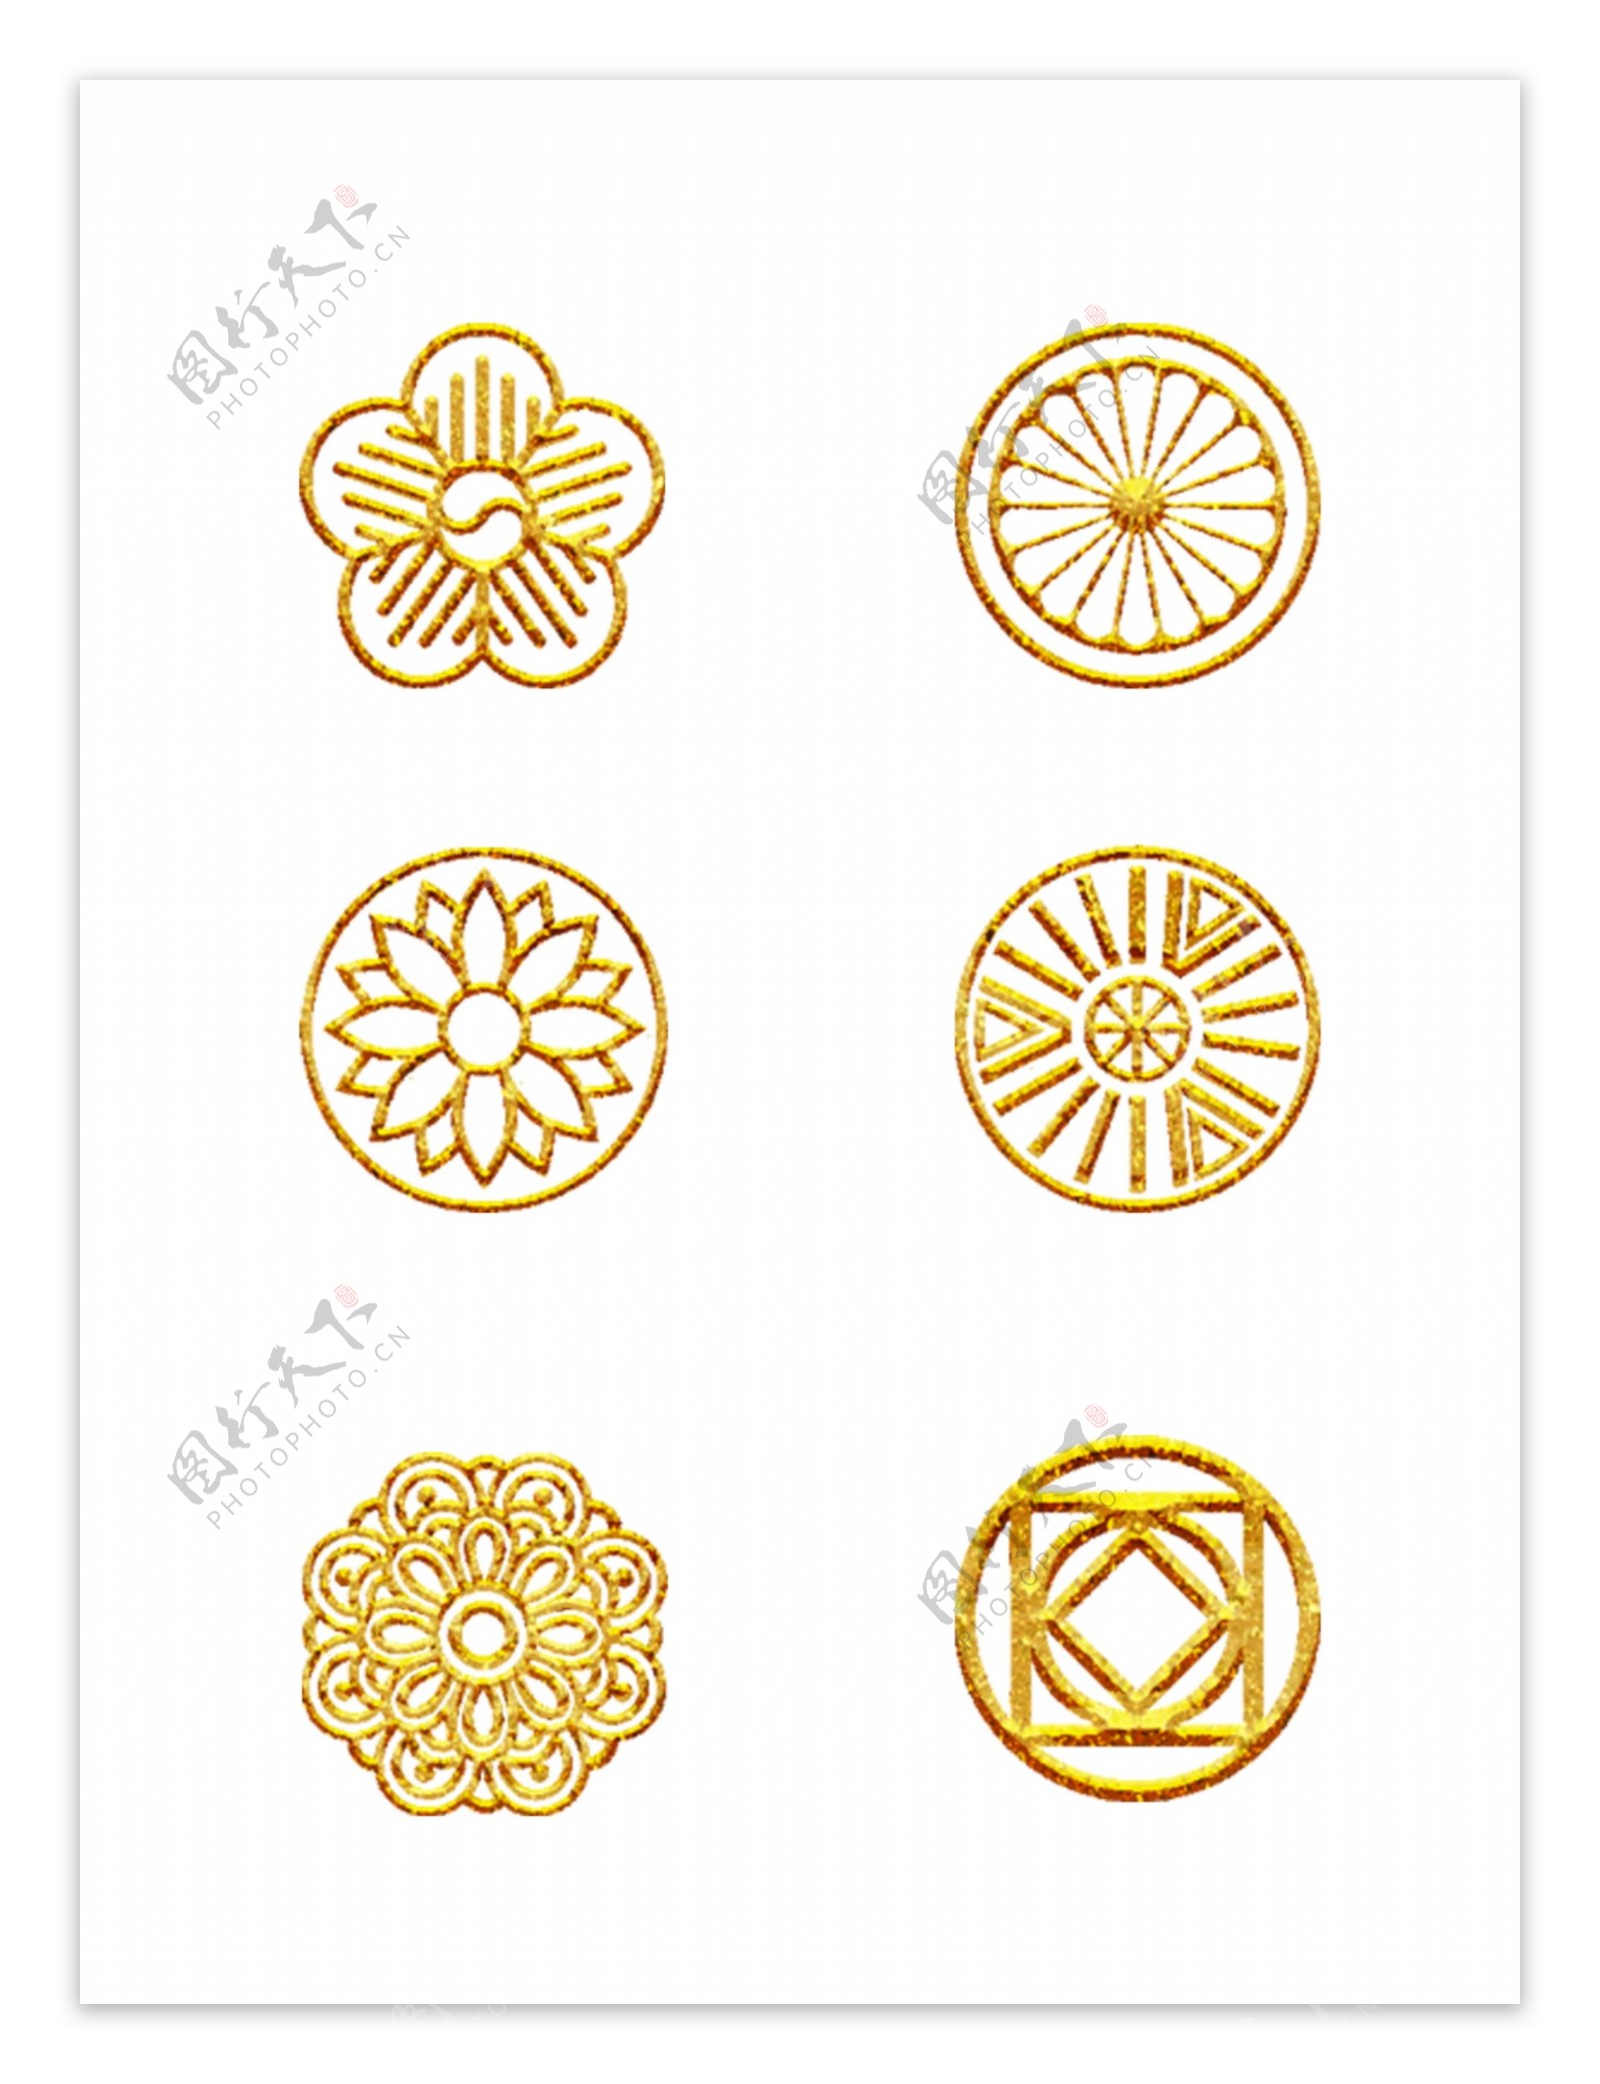 中国风中式古典花纹底纹金色纹理可商用元素